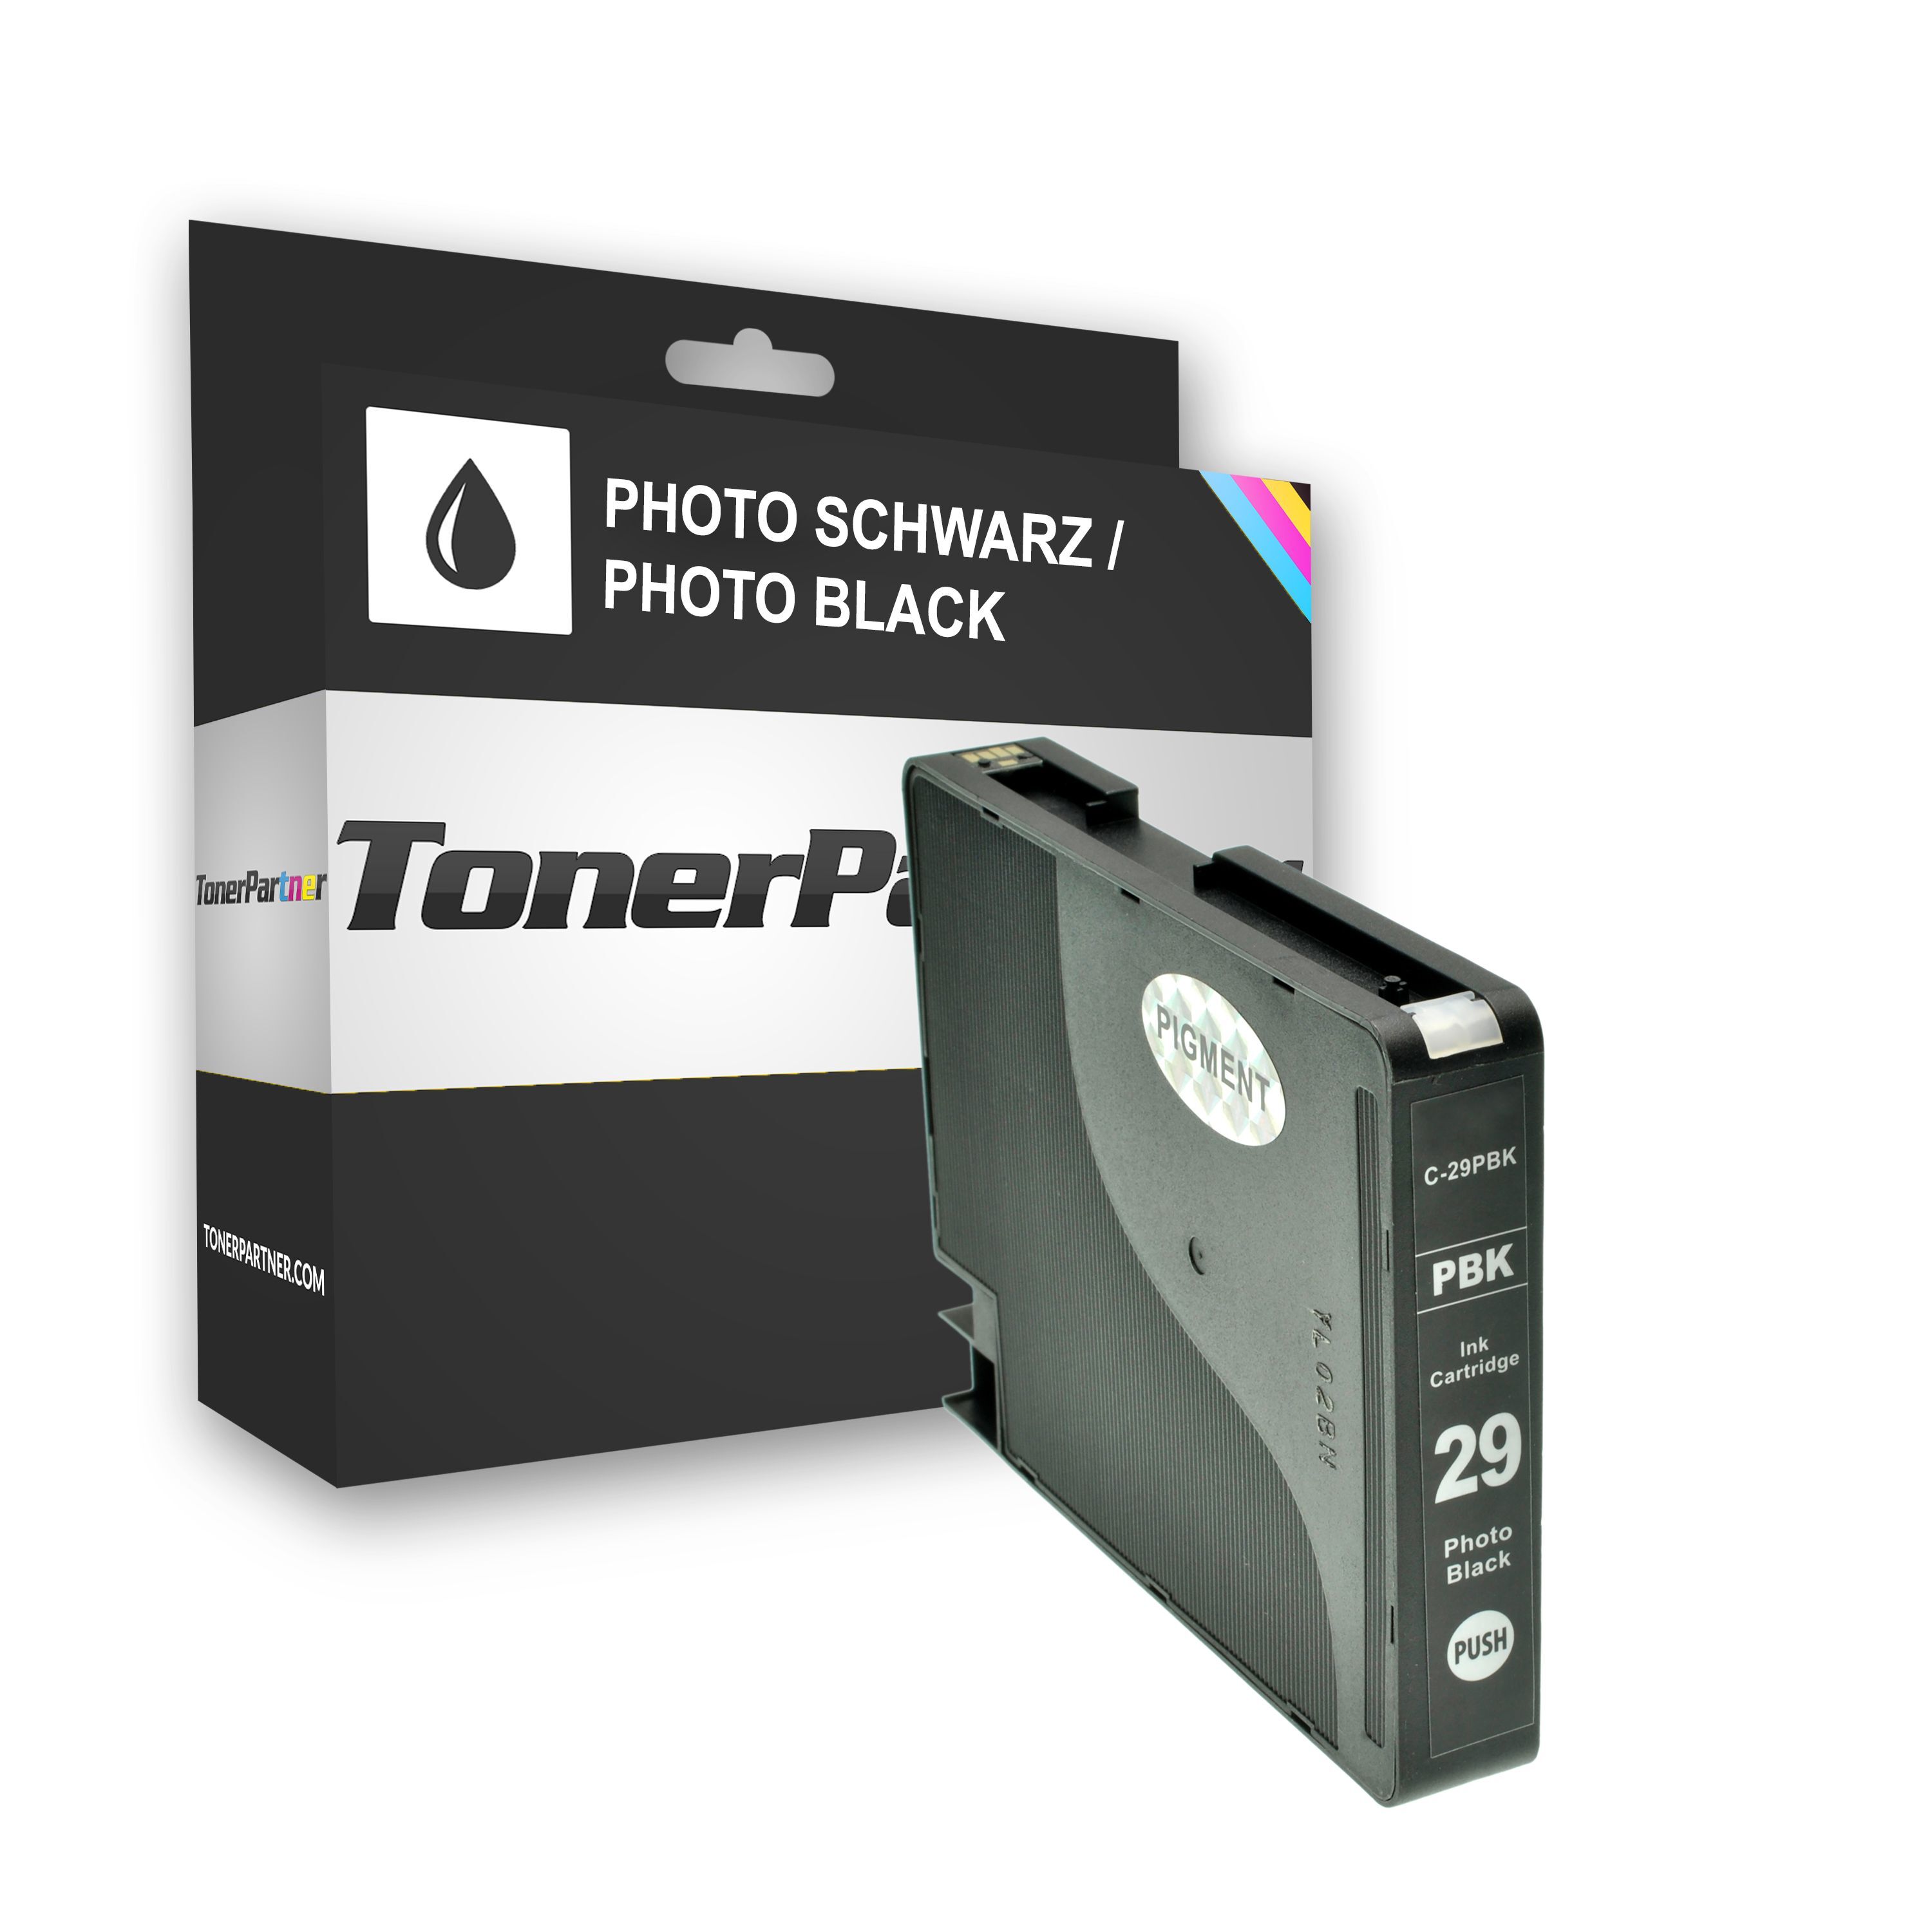 TonerPartner Compatible avec Canon PGI-29 PBK / 4869 B 001 cartouche d'encre photonoir, 1 300 pages, 1,08 centimes par page, contenu: 36 ml de TonerPartner